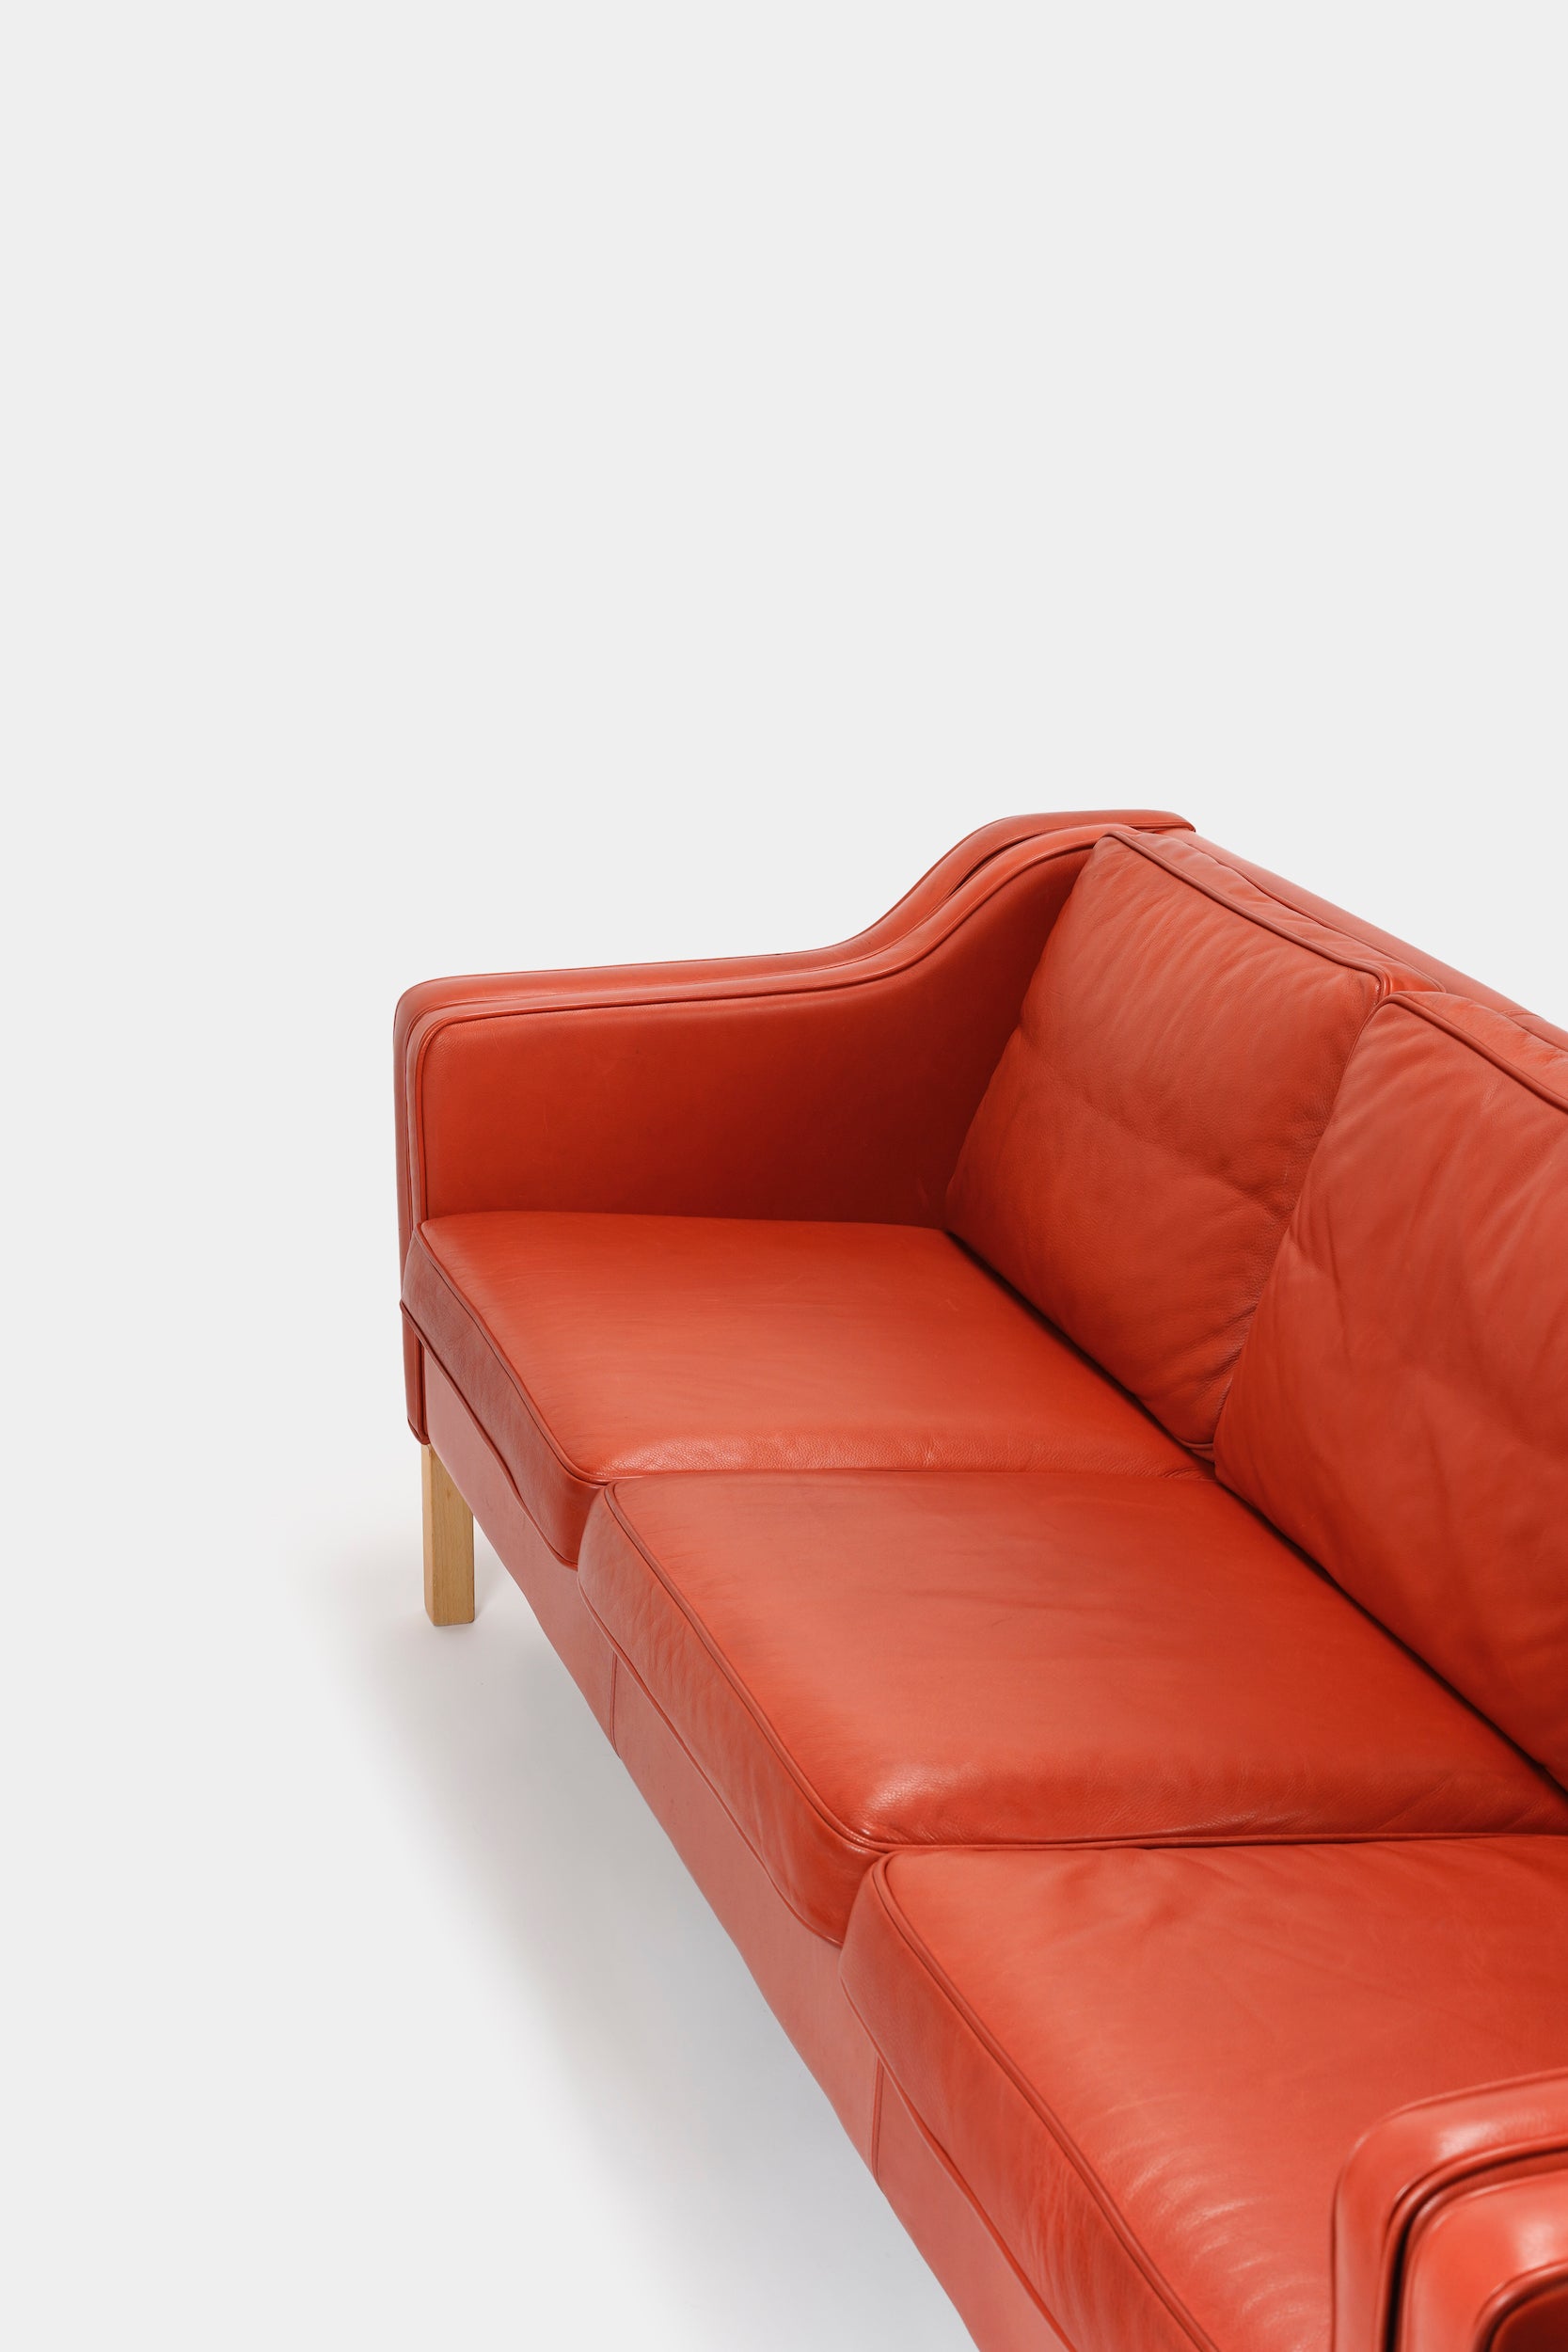 Børge Mogensen Sofa Model 2213, Frederica 60er